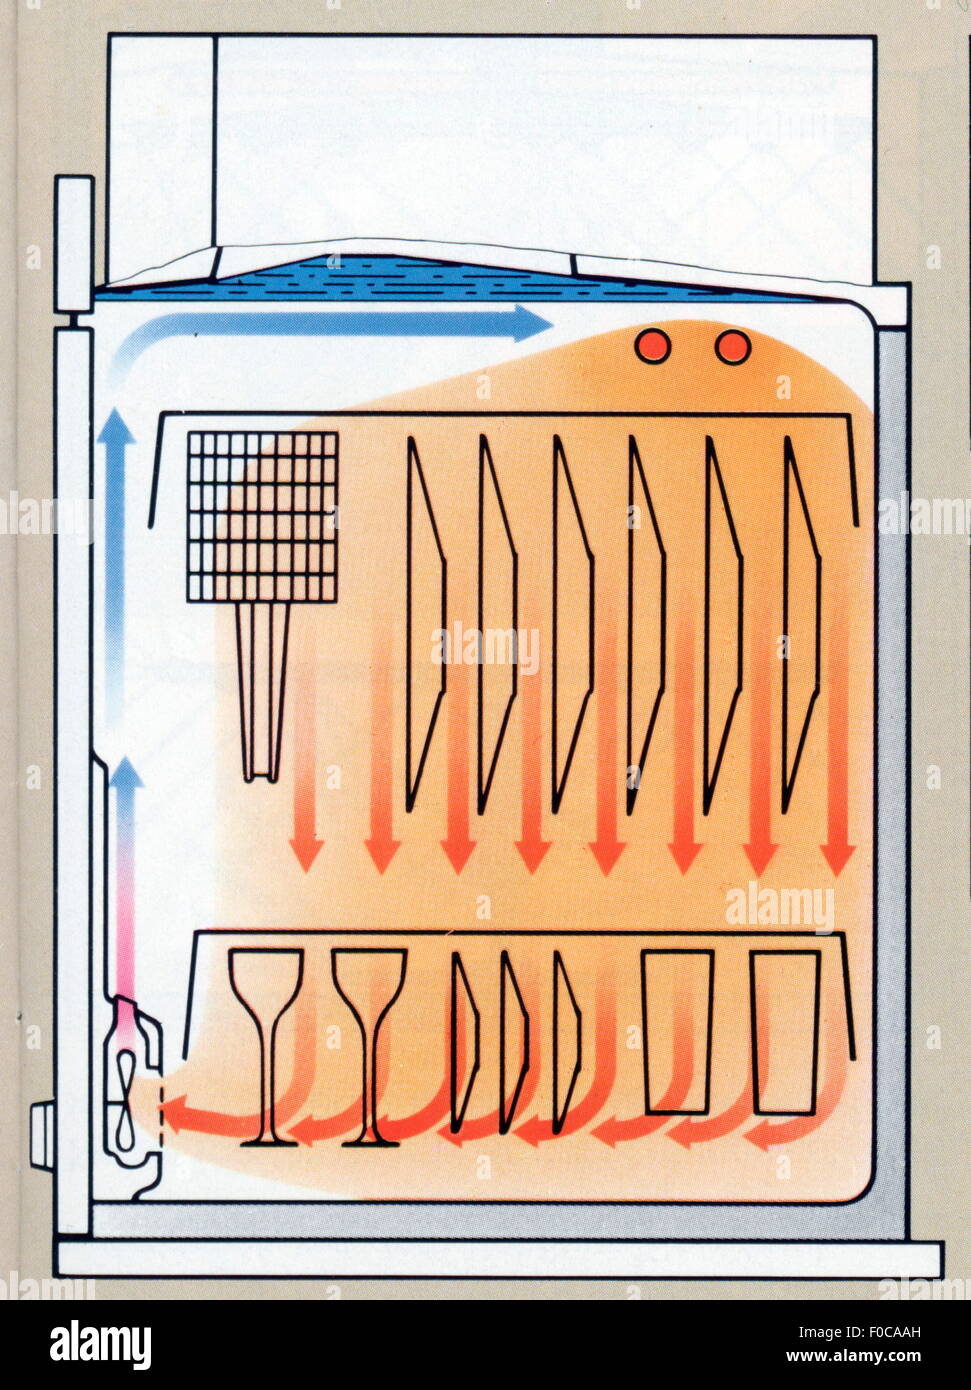 Haushalt, Küche und Geschirr, schematische Darstellung der Trocknungstechnik einer Spülmaschine, aus: Broschüre der Miele & Cie. Kg, Juli 1981, Zusatz-Rechteklärung-nicht vorhanden Stockfoto